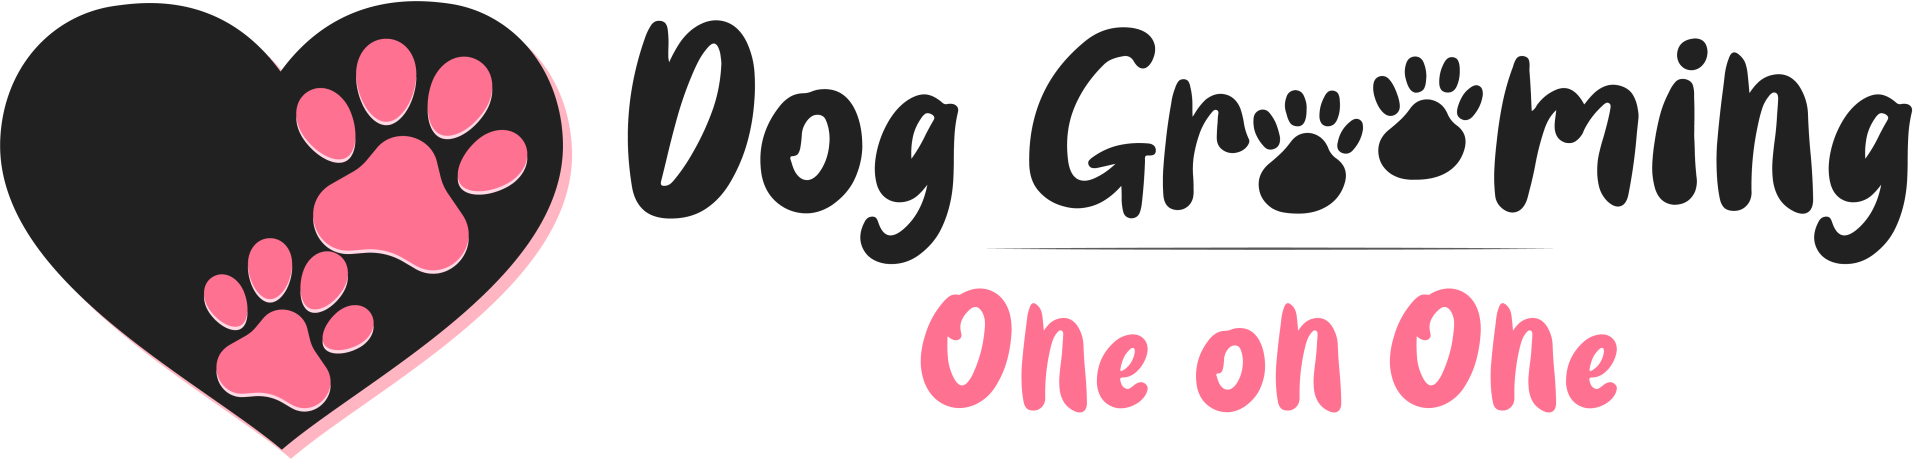 Dog Groomer in Lizton, IN | Dog Grooming